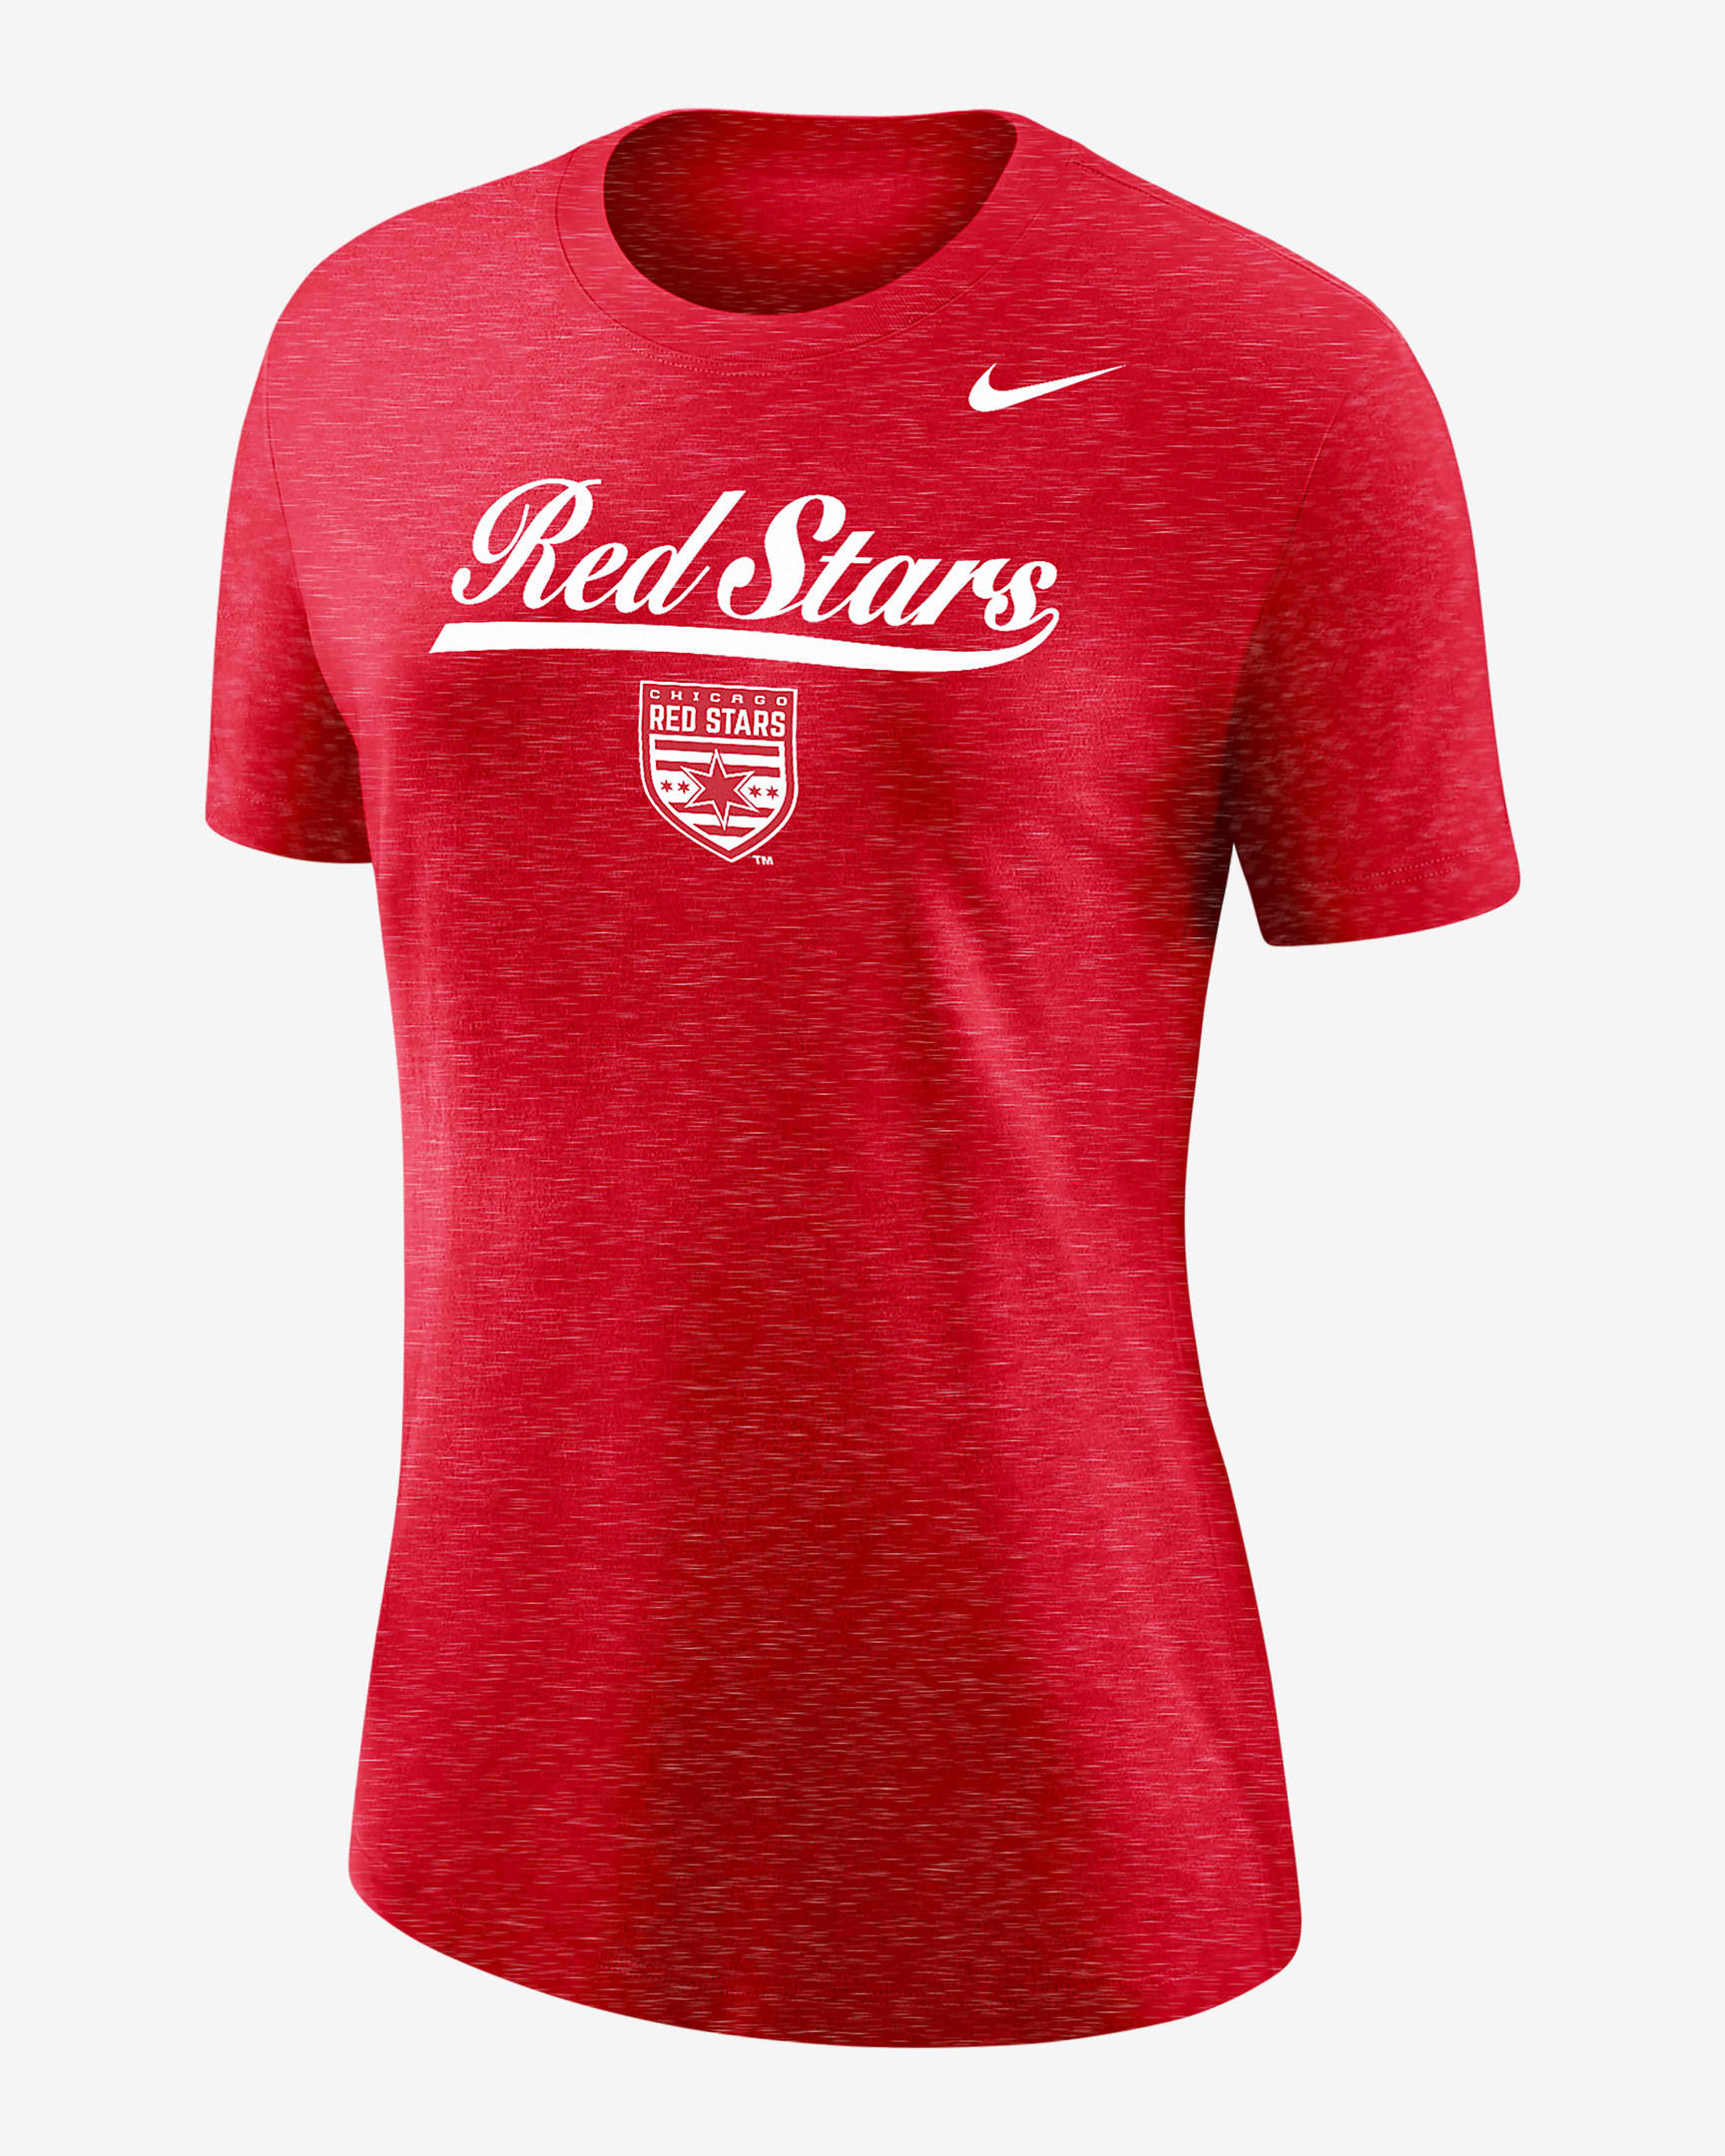 Chicago Red Stars Women's Nike Soccer Varsity T-Shirt. Nike.com